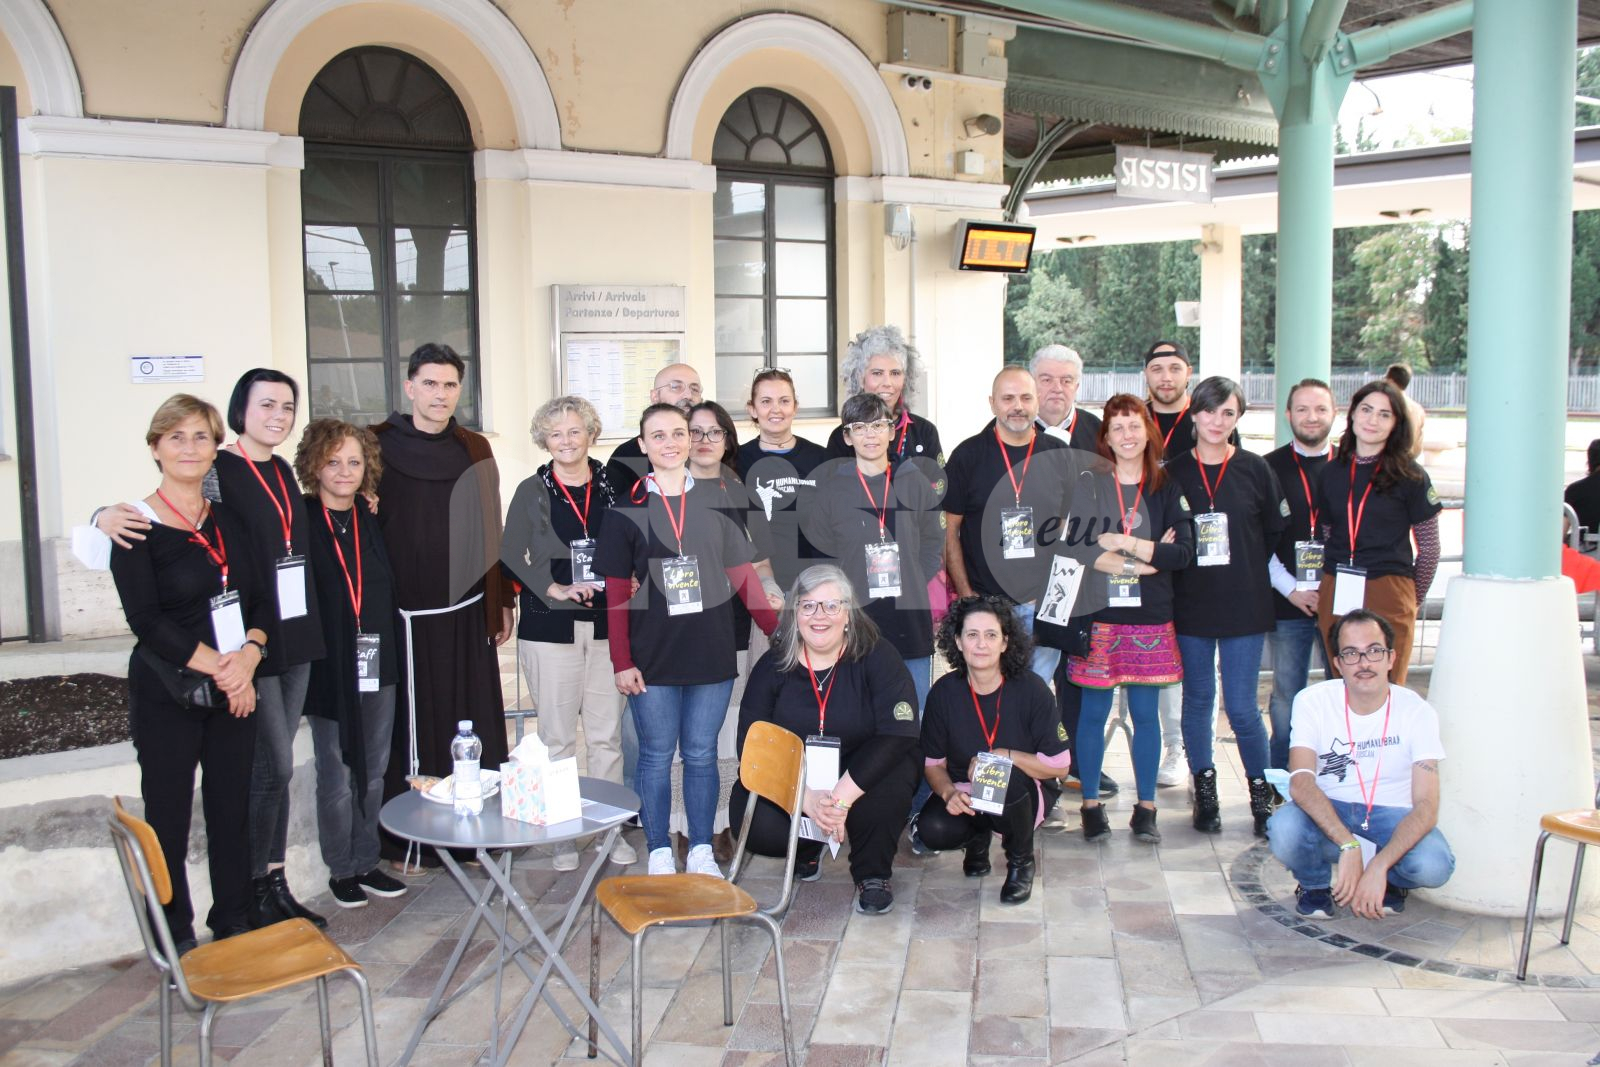 Human library, grande successo per il primo incontro ad Assisi (foto)